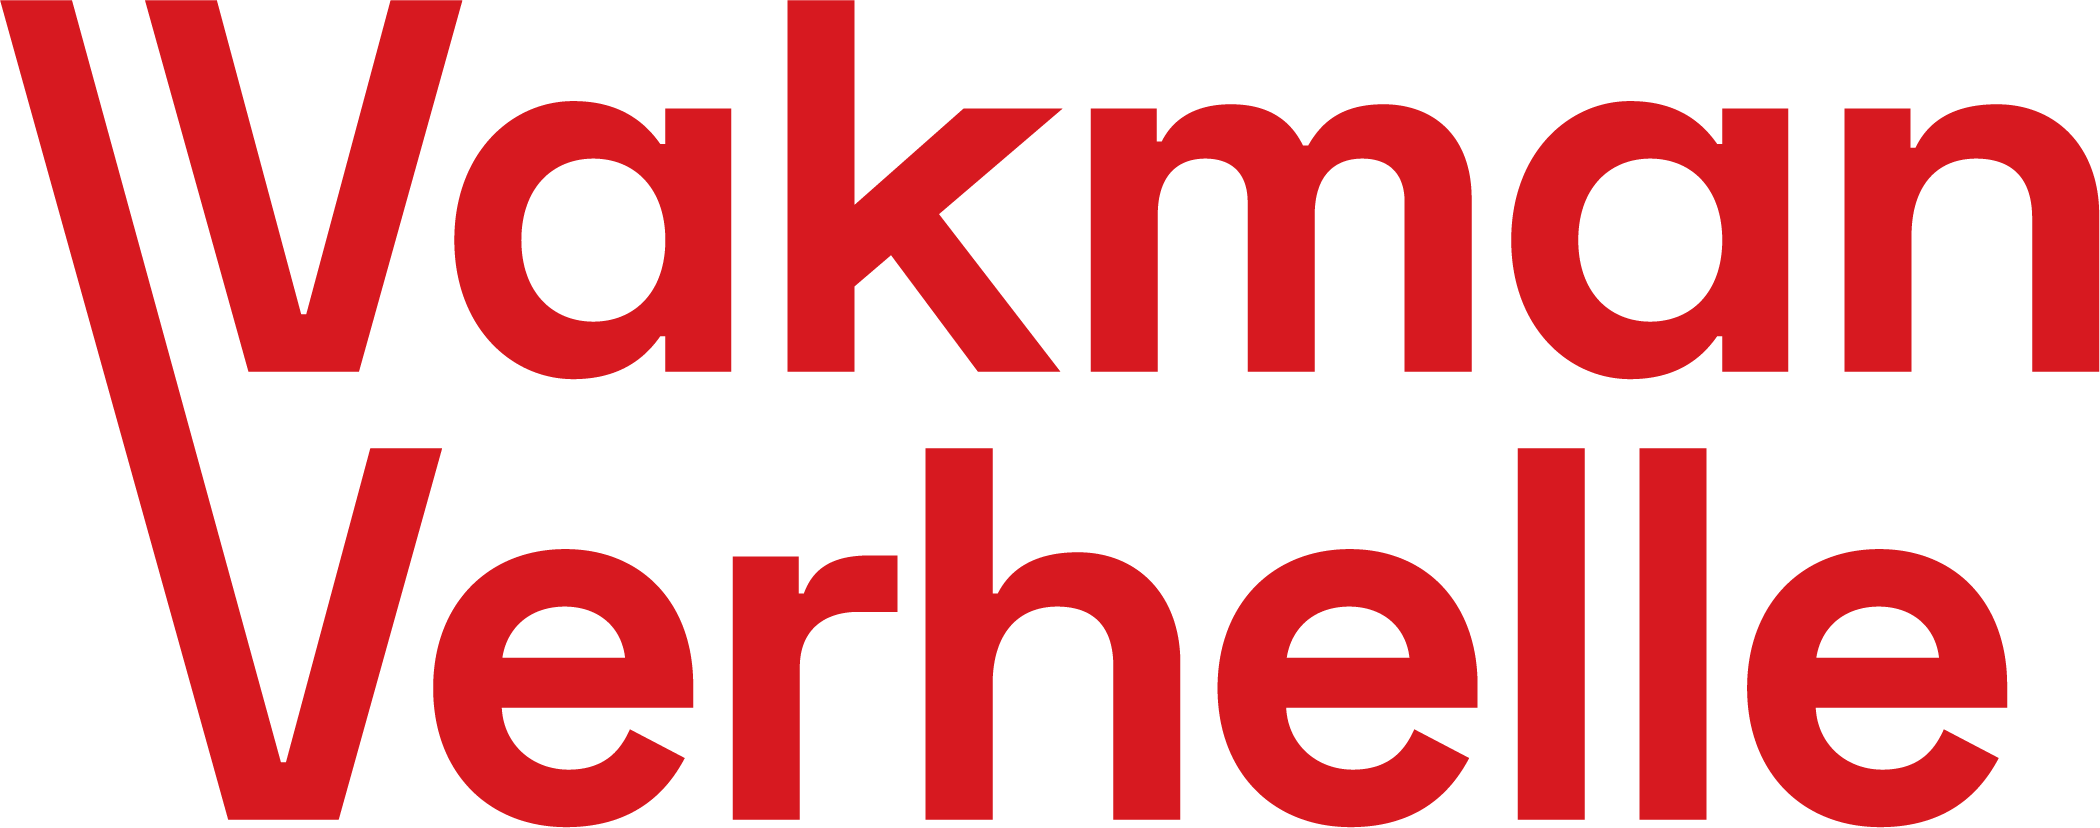 Logo Vakman Verhelle rood